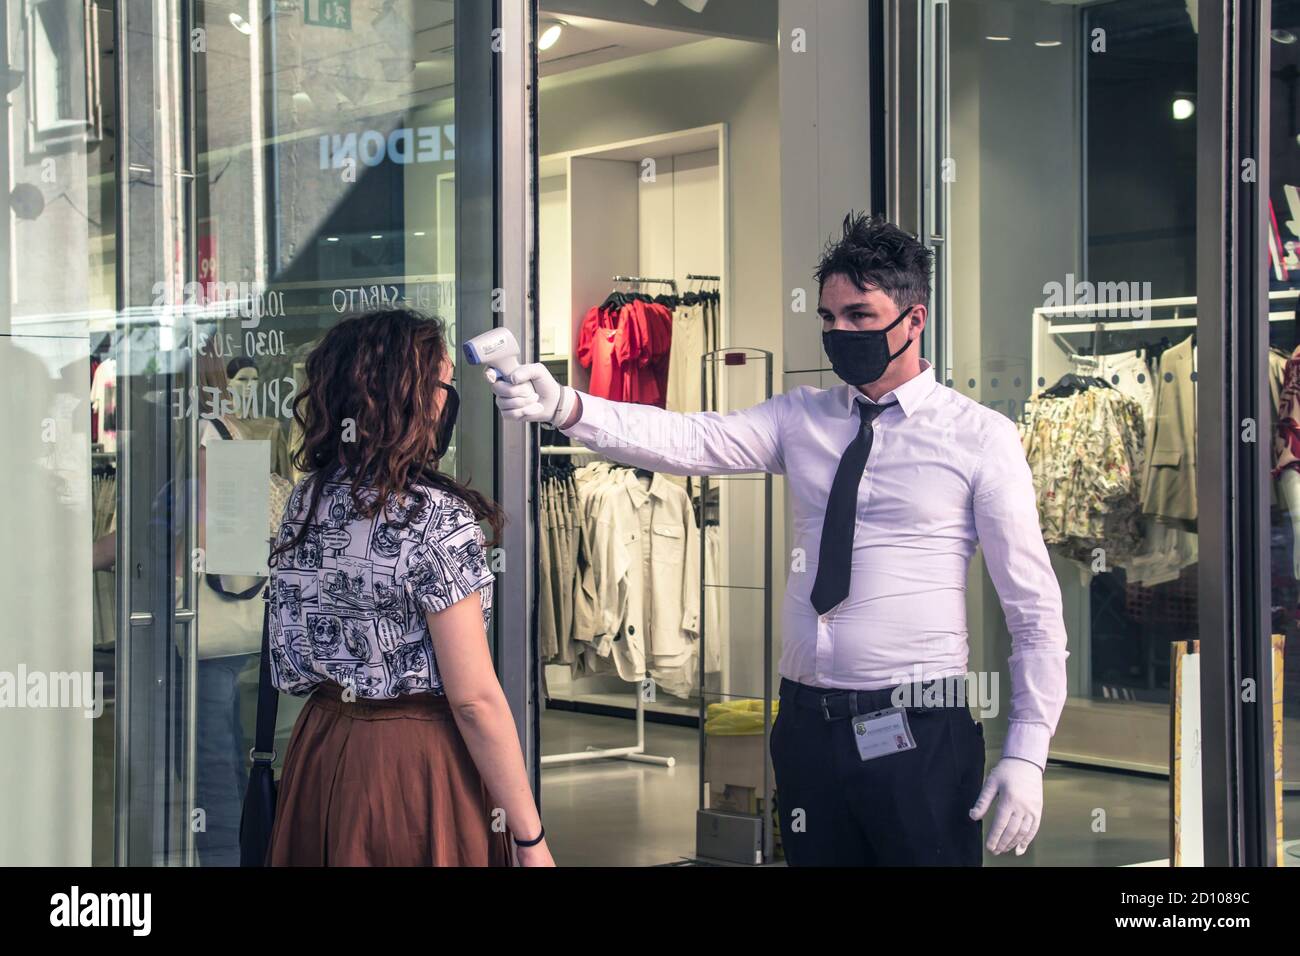 Bolonia: empleado de seguridad comprueba la temperatura de un cliente antes de entrar en la tienda de ropa (Covid-19 2020 pandemia Fotografía stock - Alamy